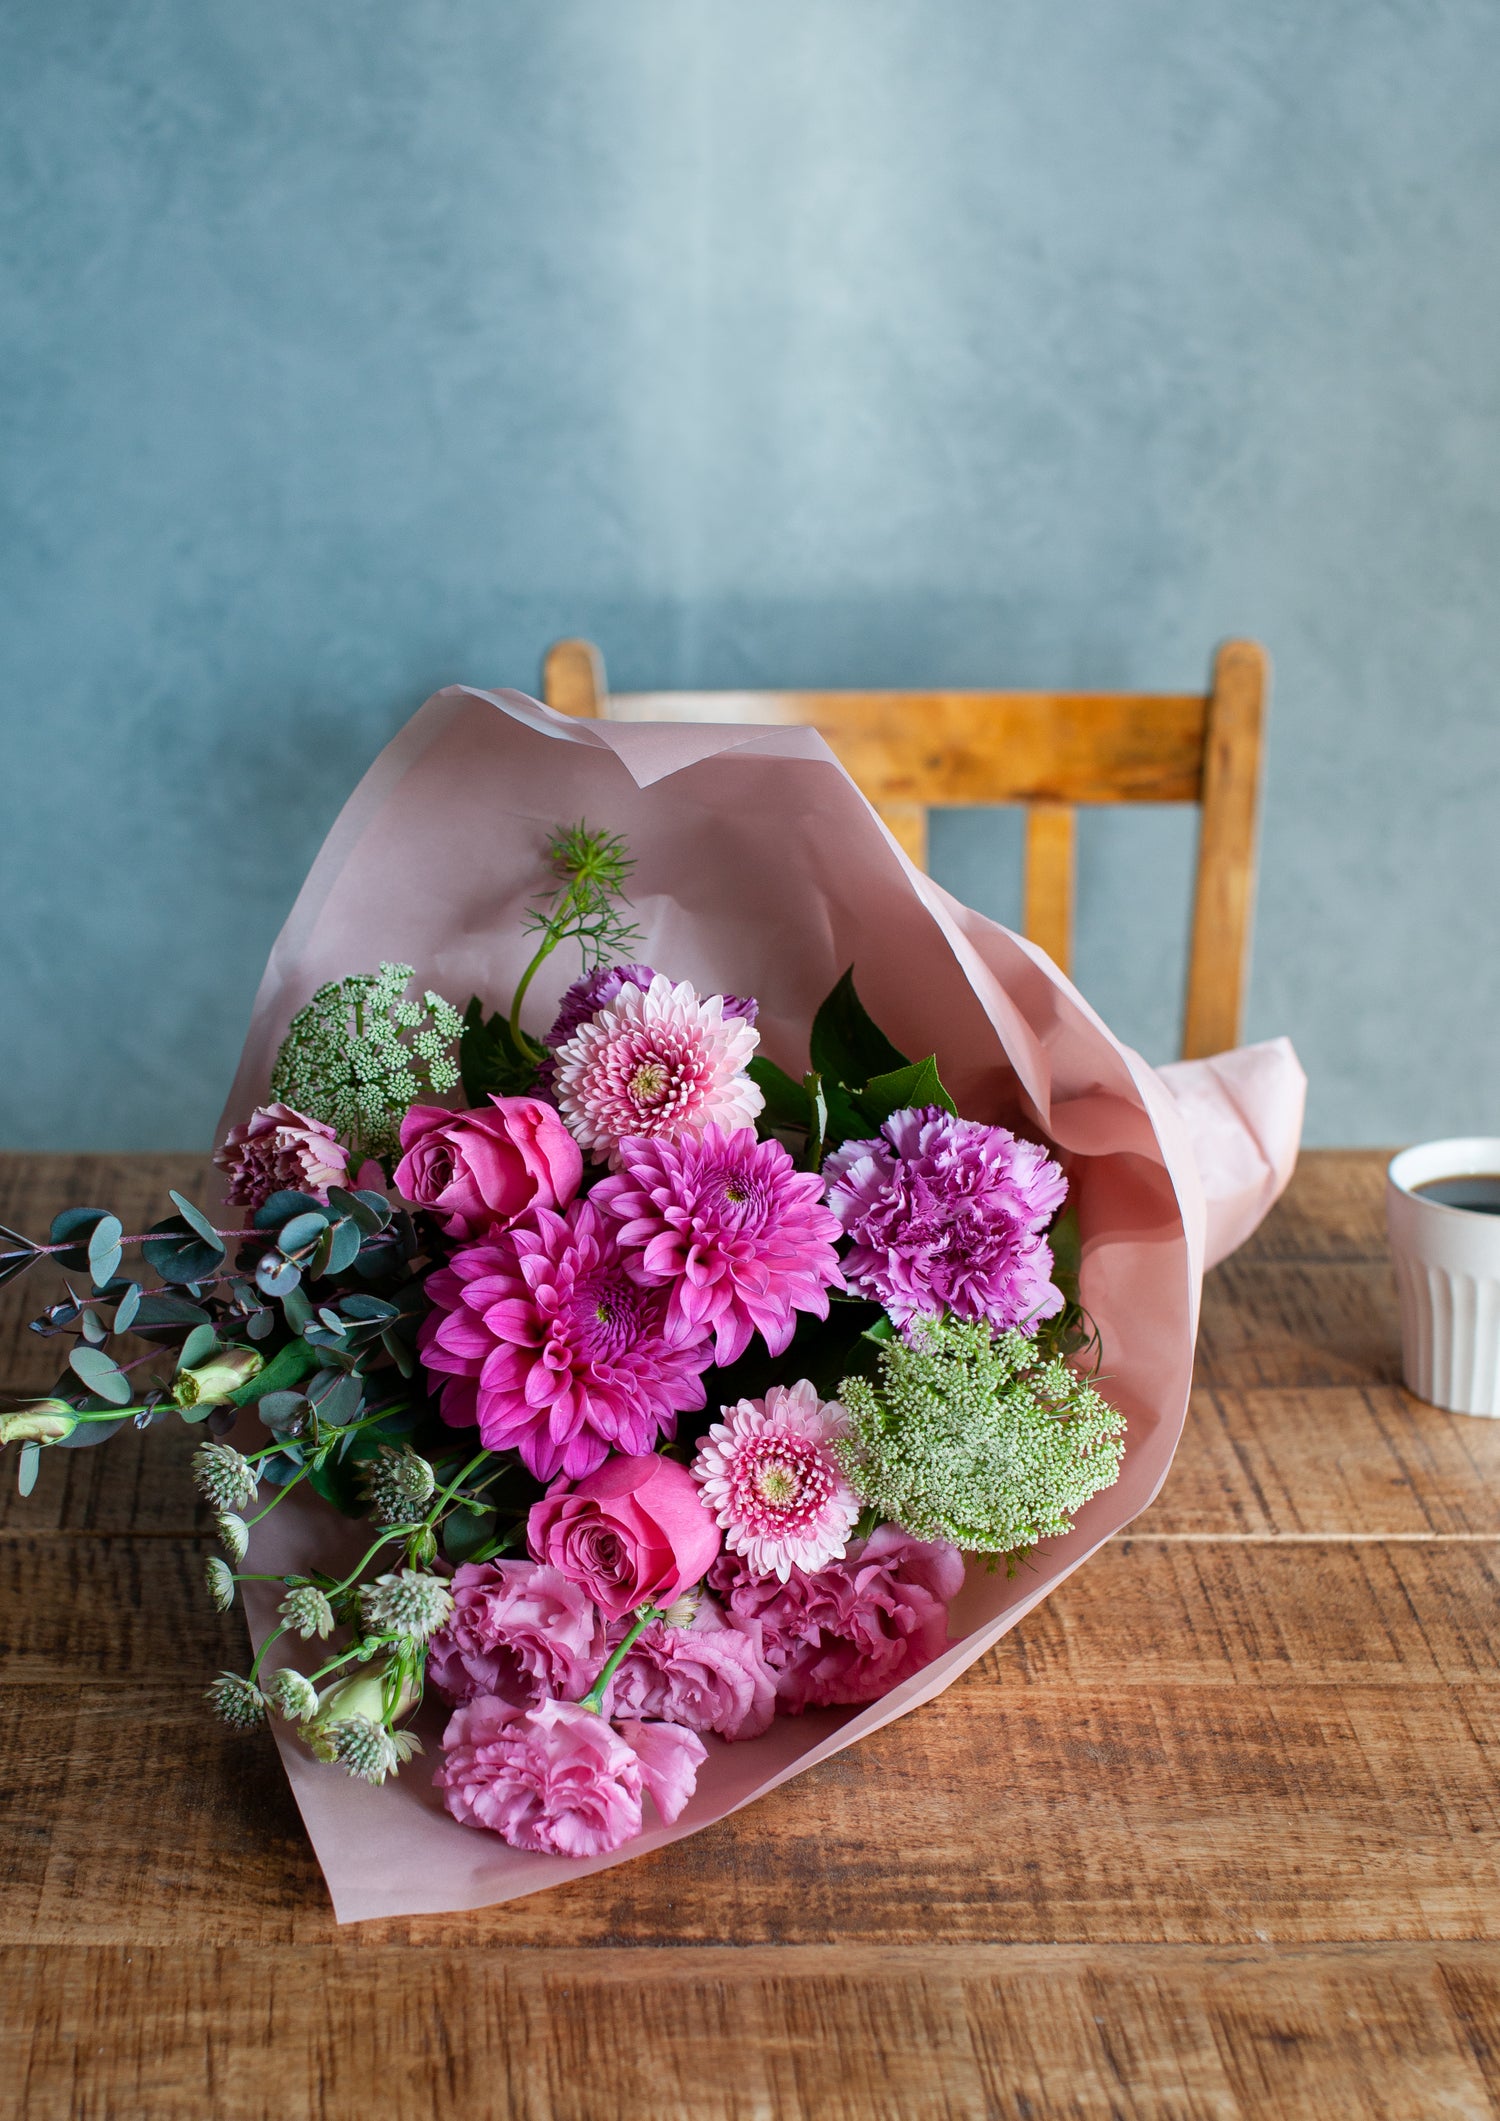 【花束】お祝いにおすすめの花束 LLサイズ ピンク系「grâce rose」